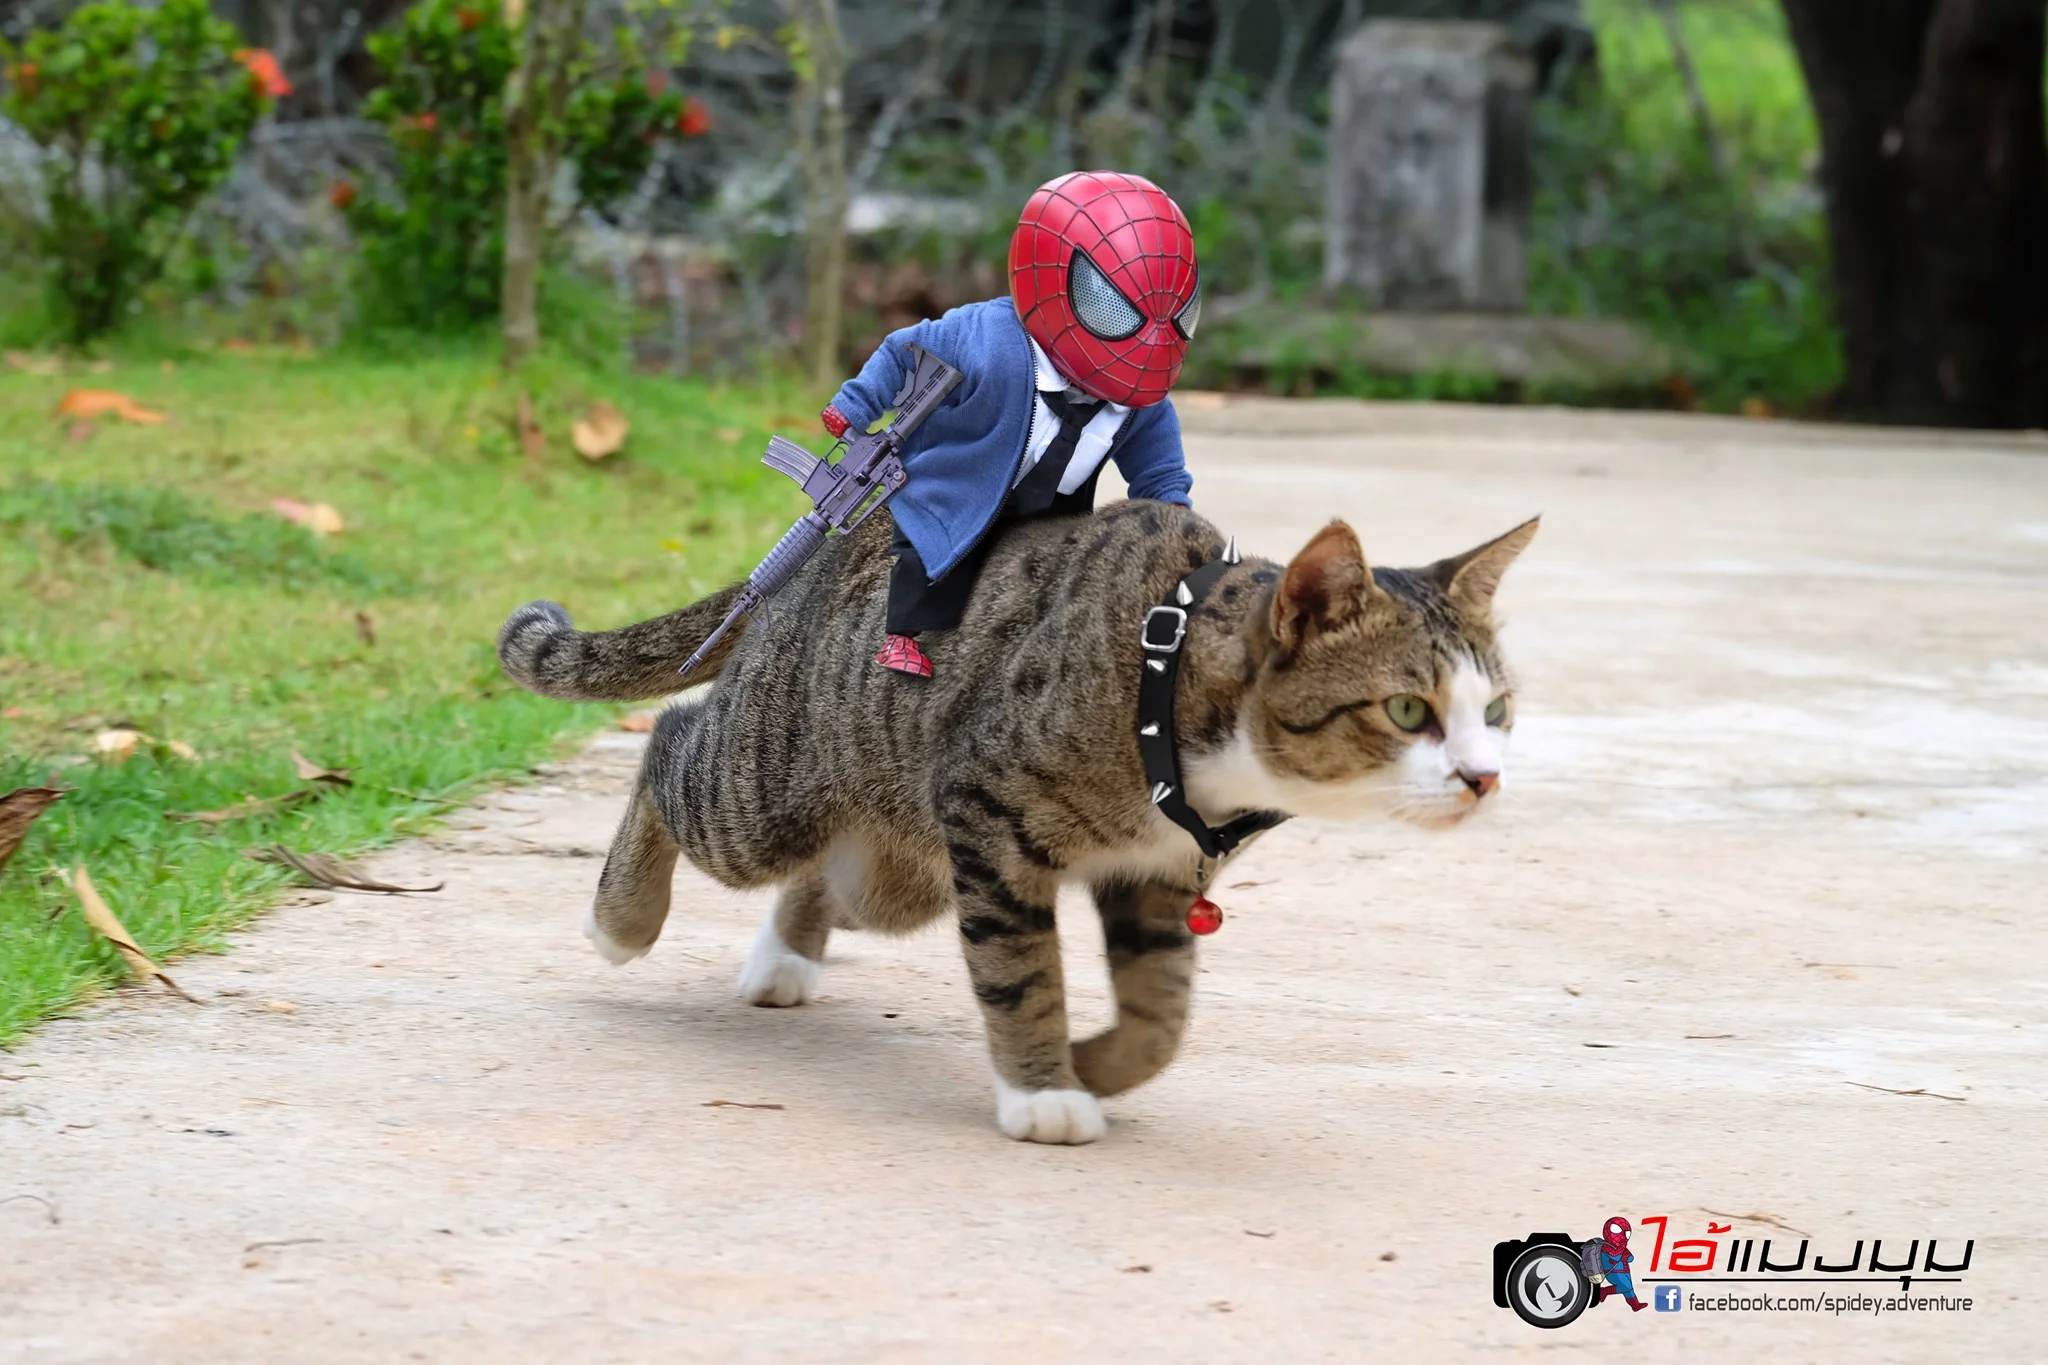 Художник добавил к фото с котиками изображение Человека-паука – это выглядит очень смешно - фото 459373